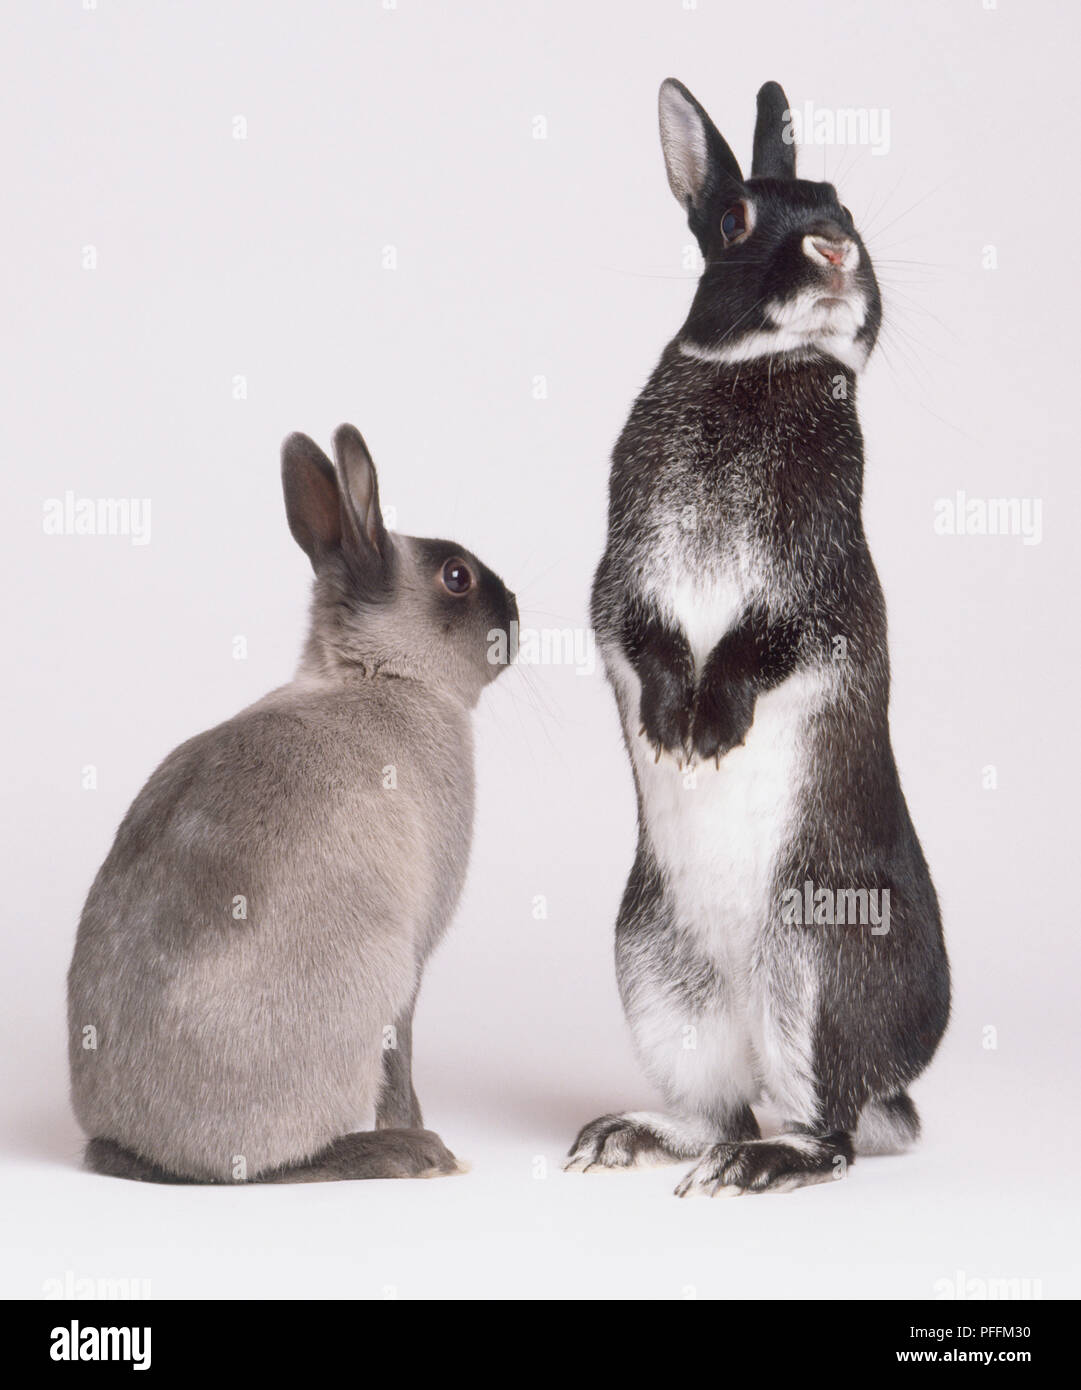 Dos conejos (Oryctolagus cuniculus), vista posterior del asentado conejo gris, junto al conejo blanco y negro de pie sobre las patas traseras, mirando hacia fuera, vista delantera. Foto de stock